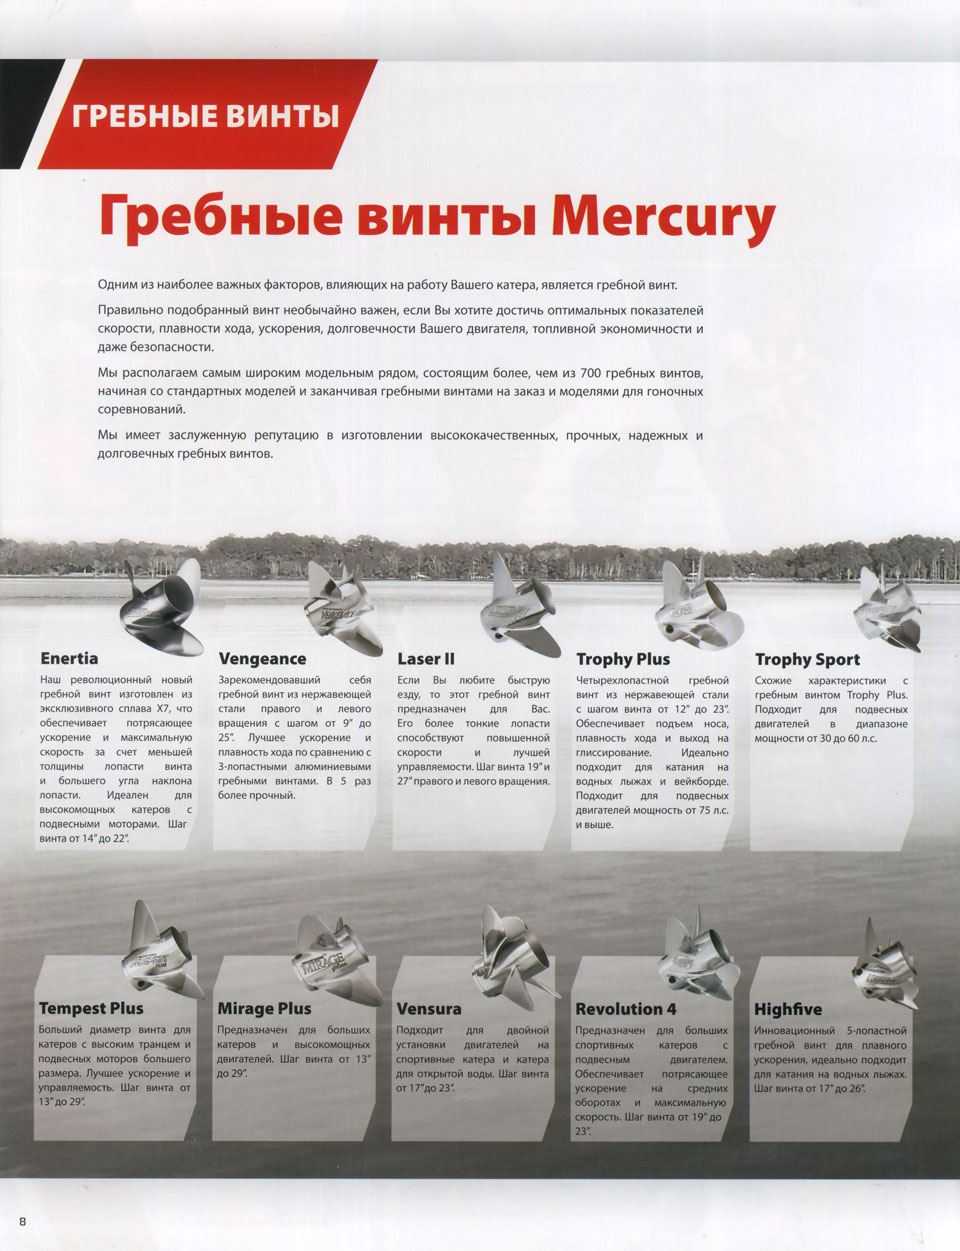    mercury 2013